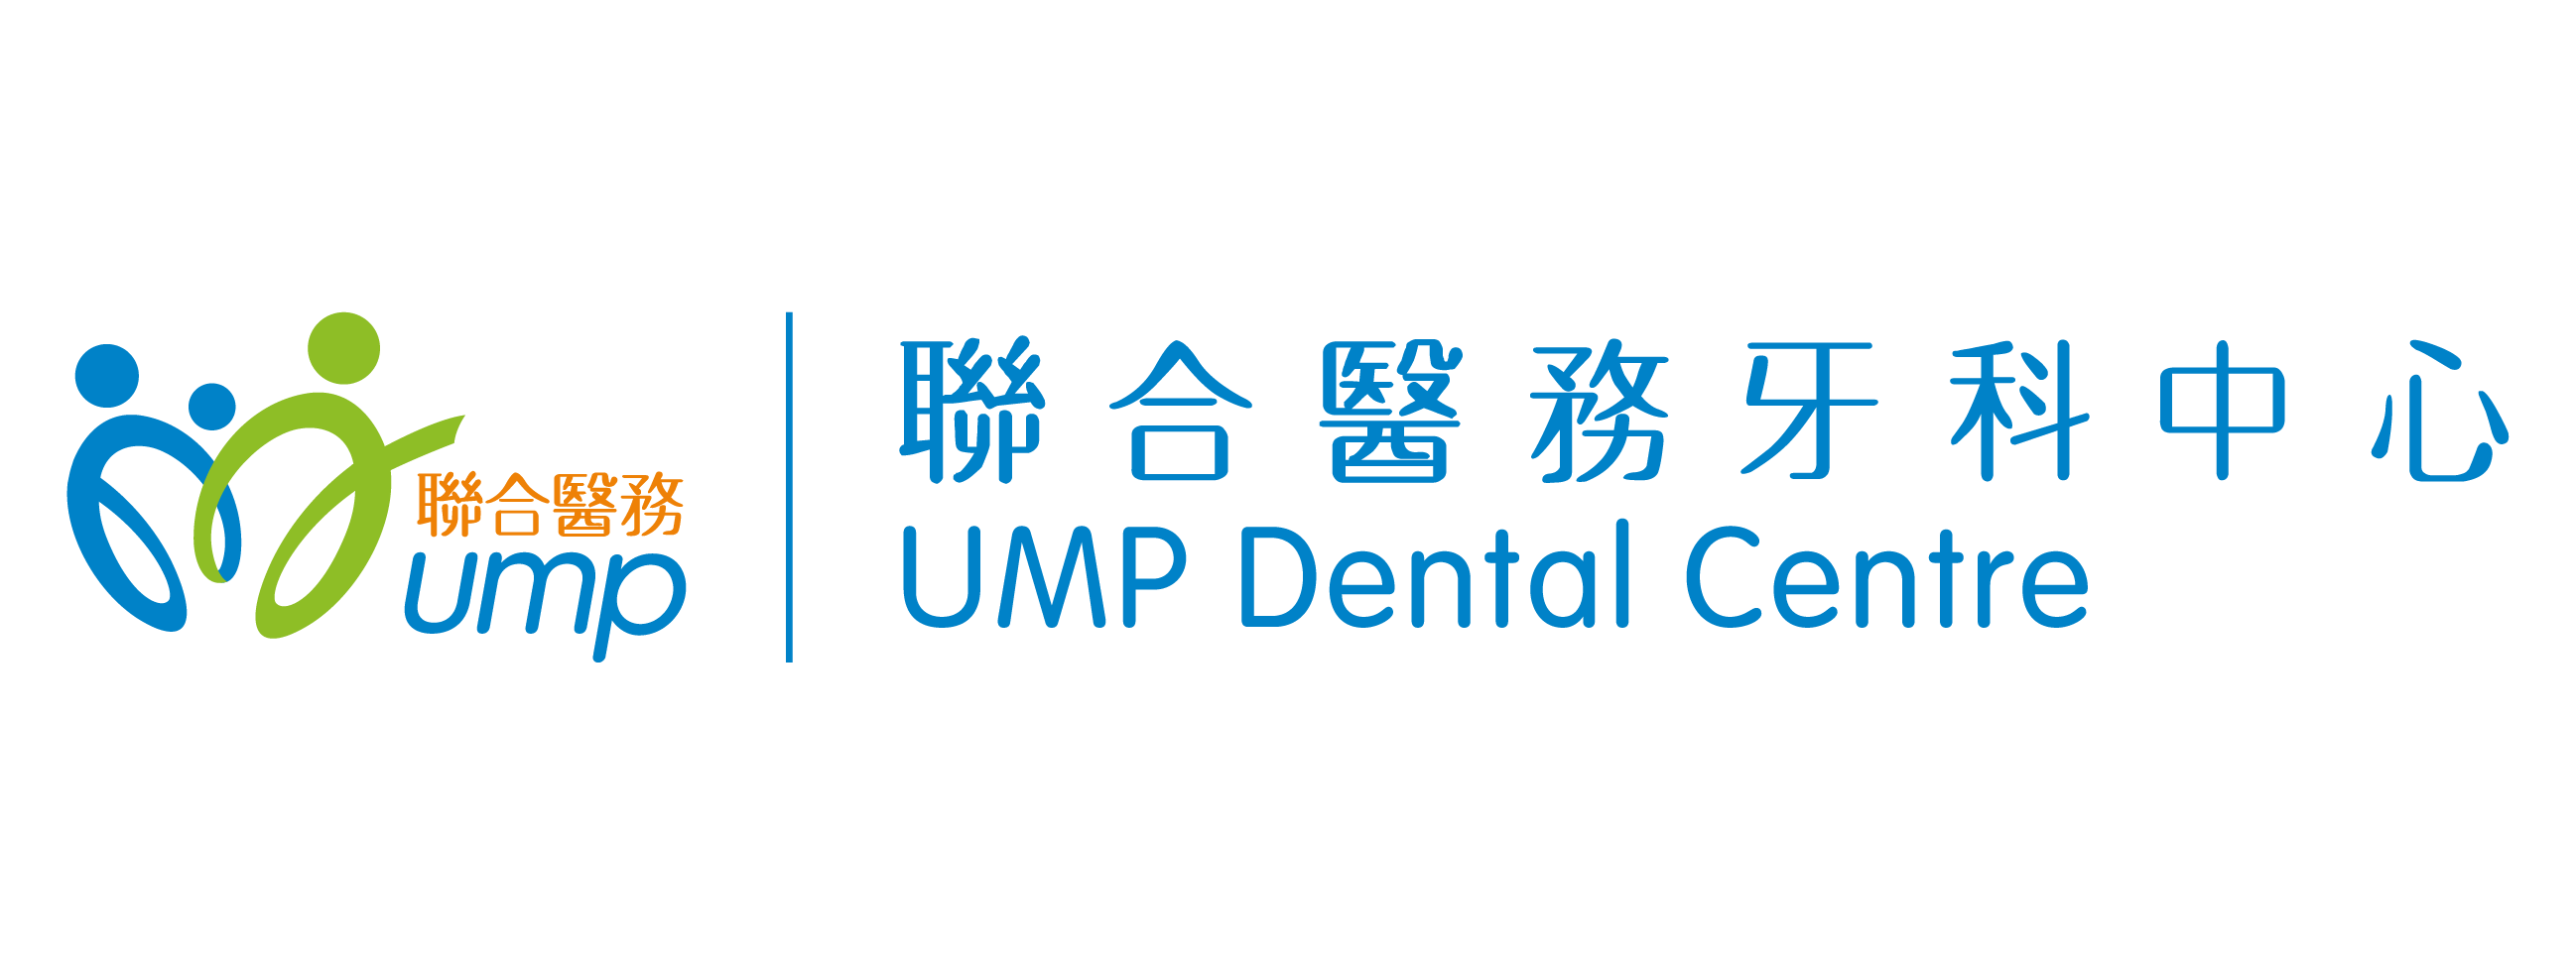 UMP Dental Centre